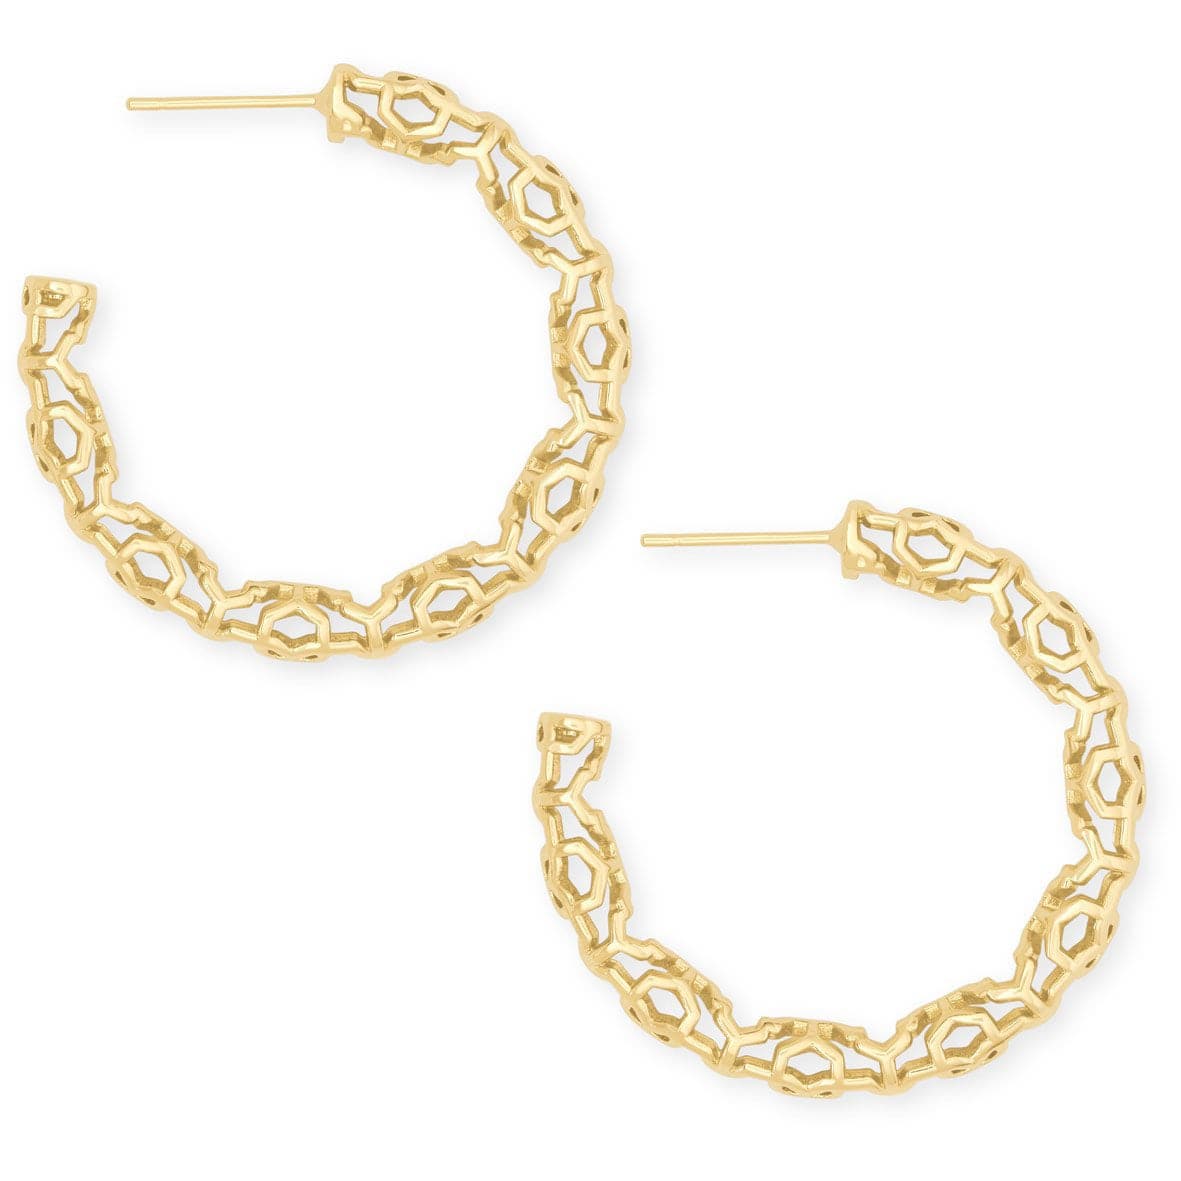 Kendra Scott - Maggie Small Hoop Earrings in Gold Filigree - Findlay Rowe Designs